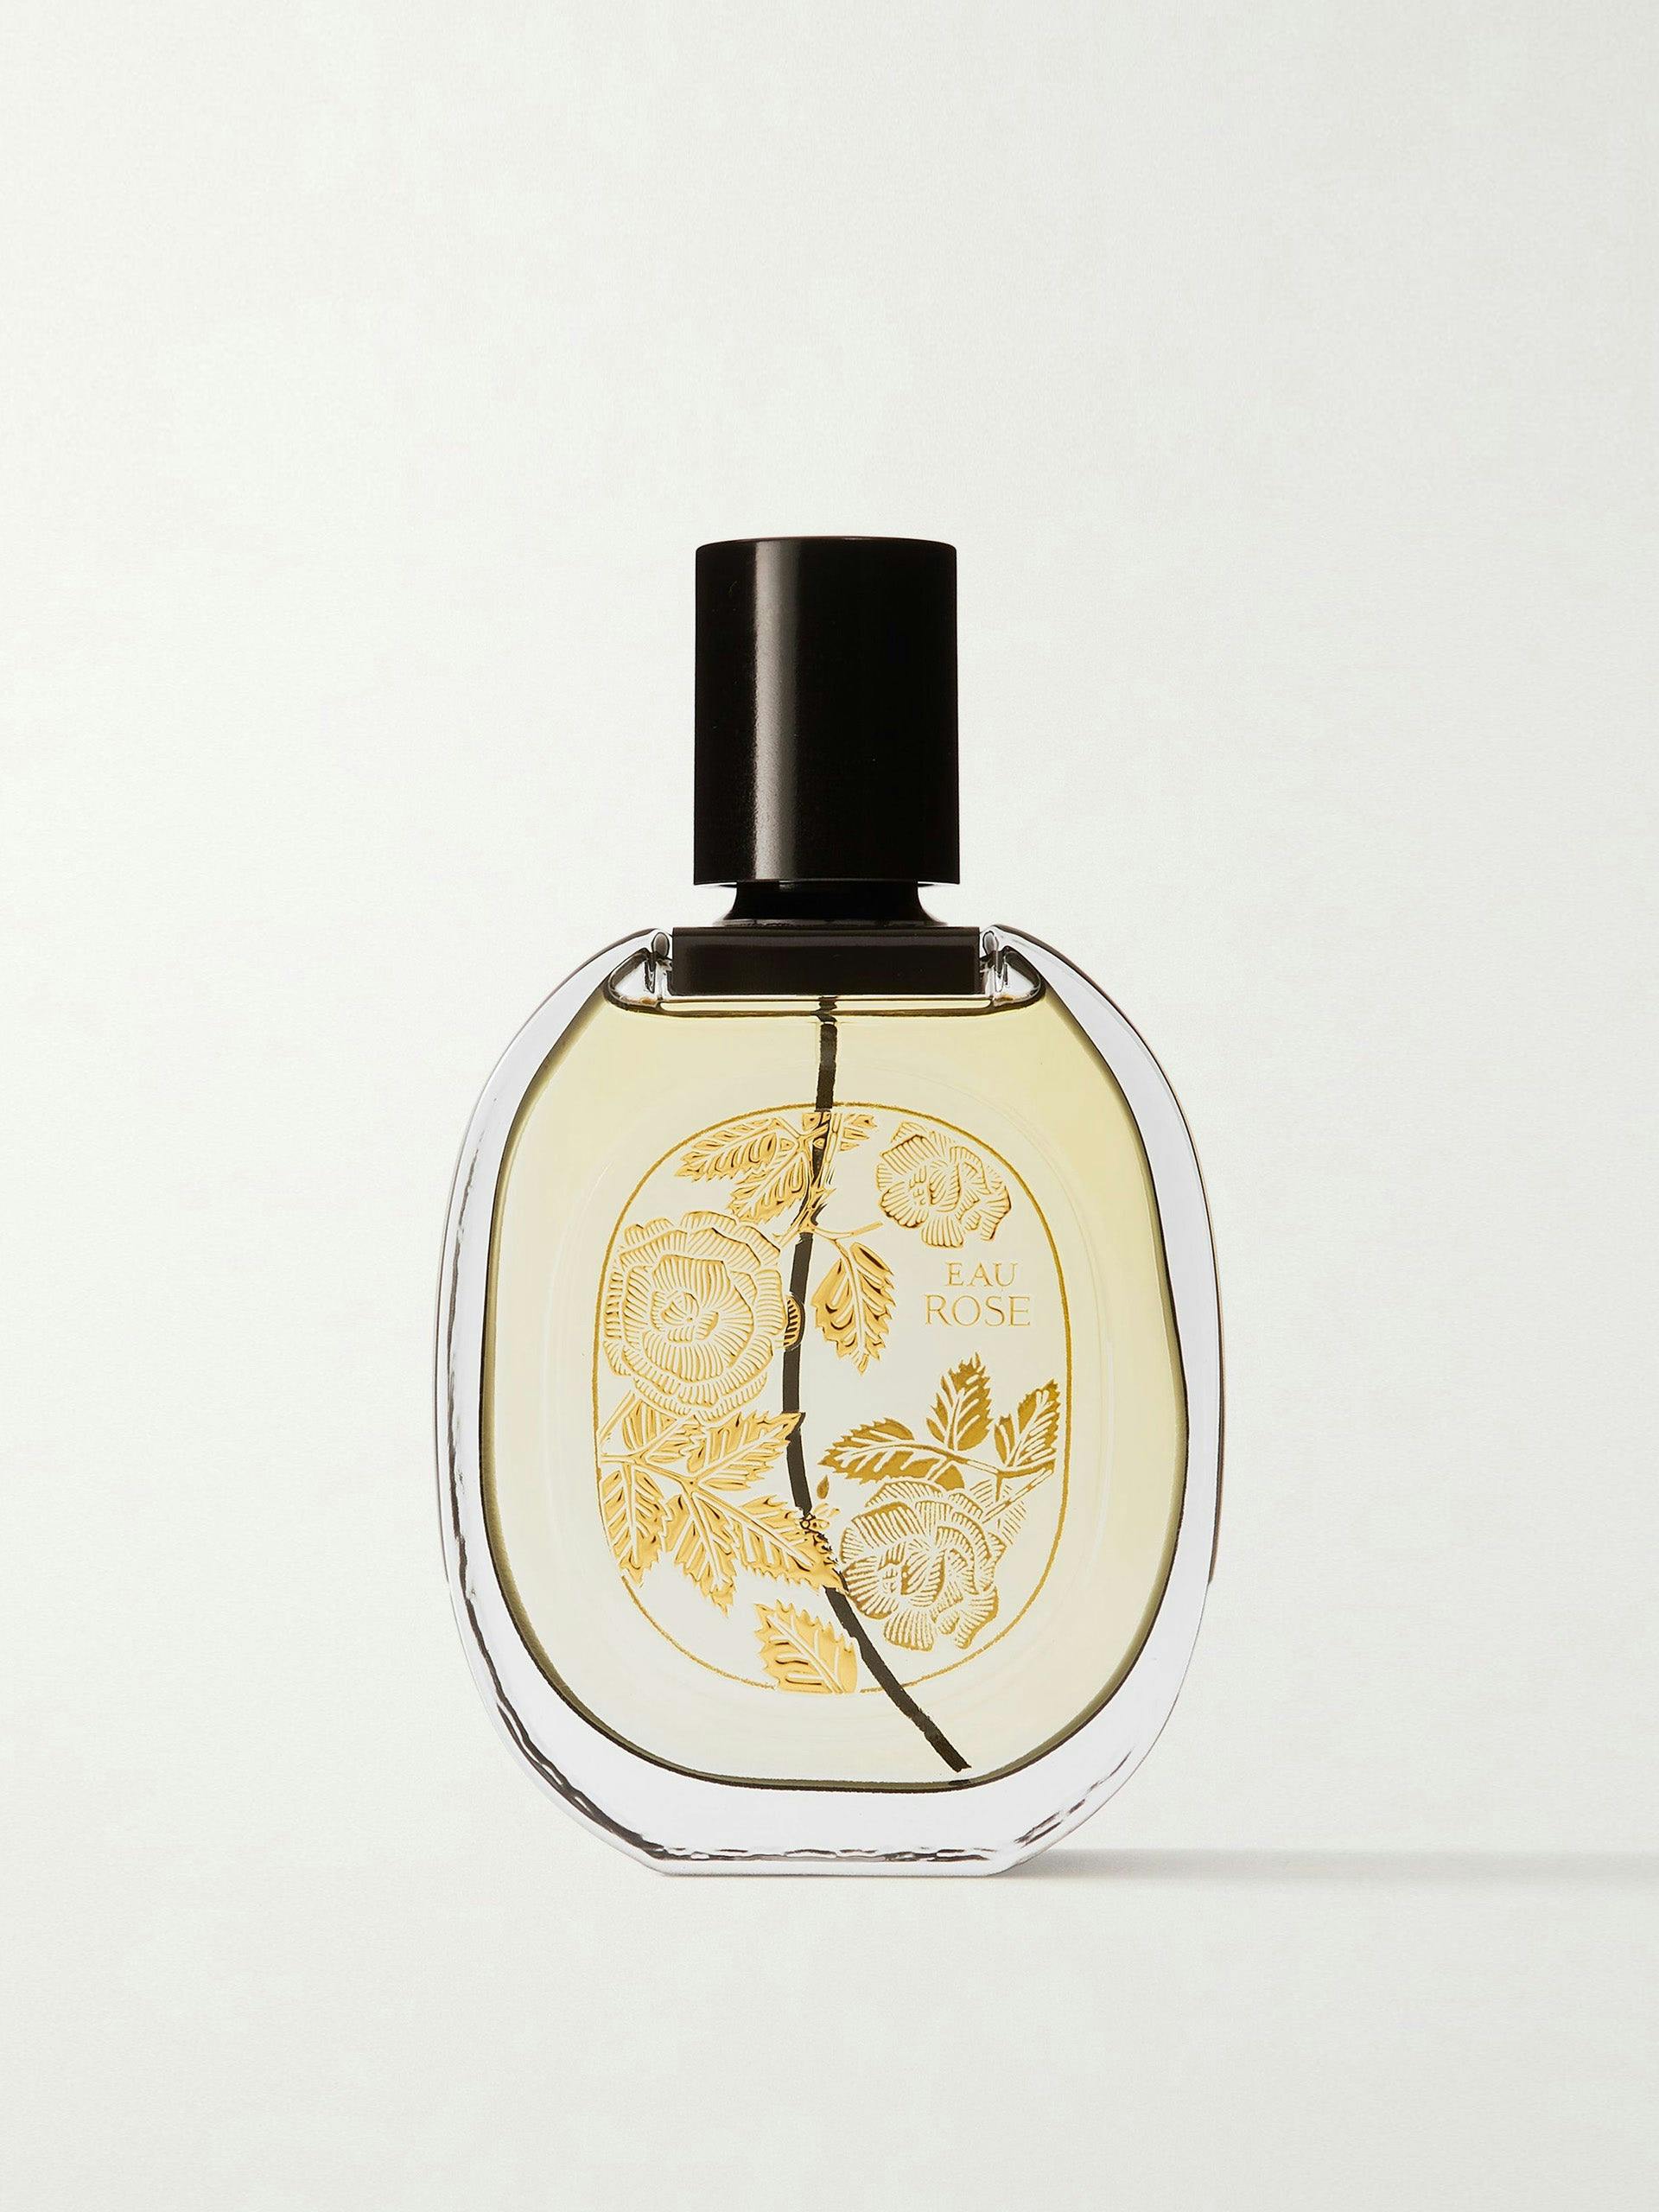 Limited edition eau de parfum - Eau Rose